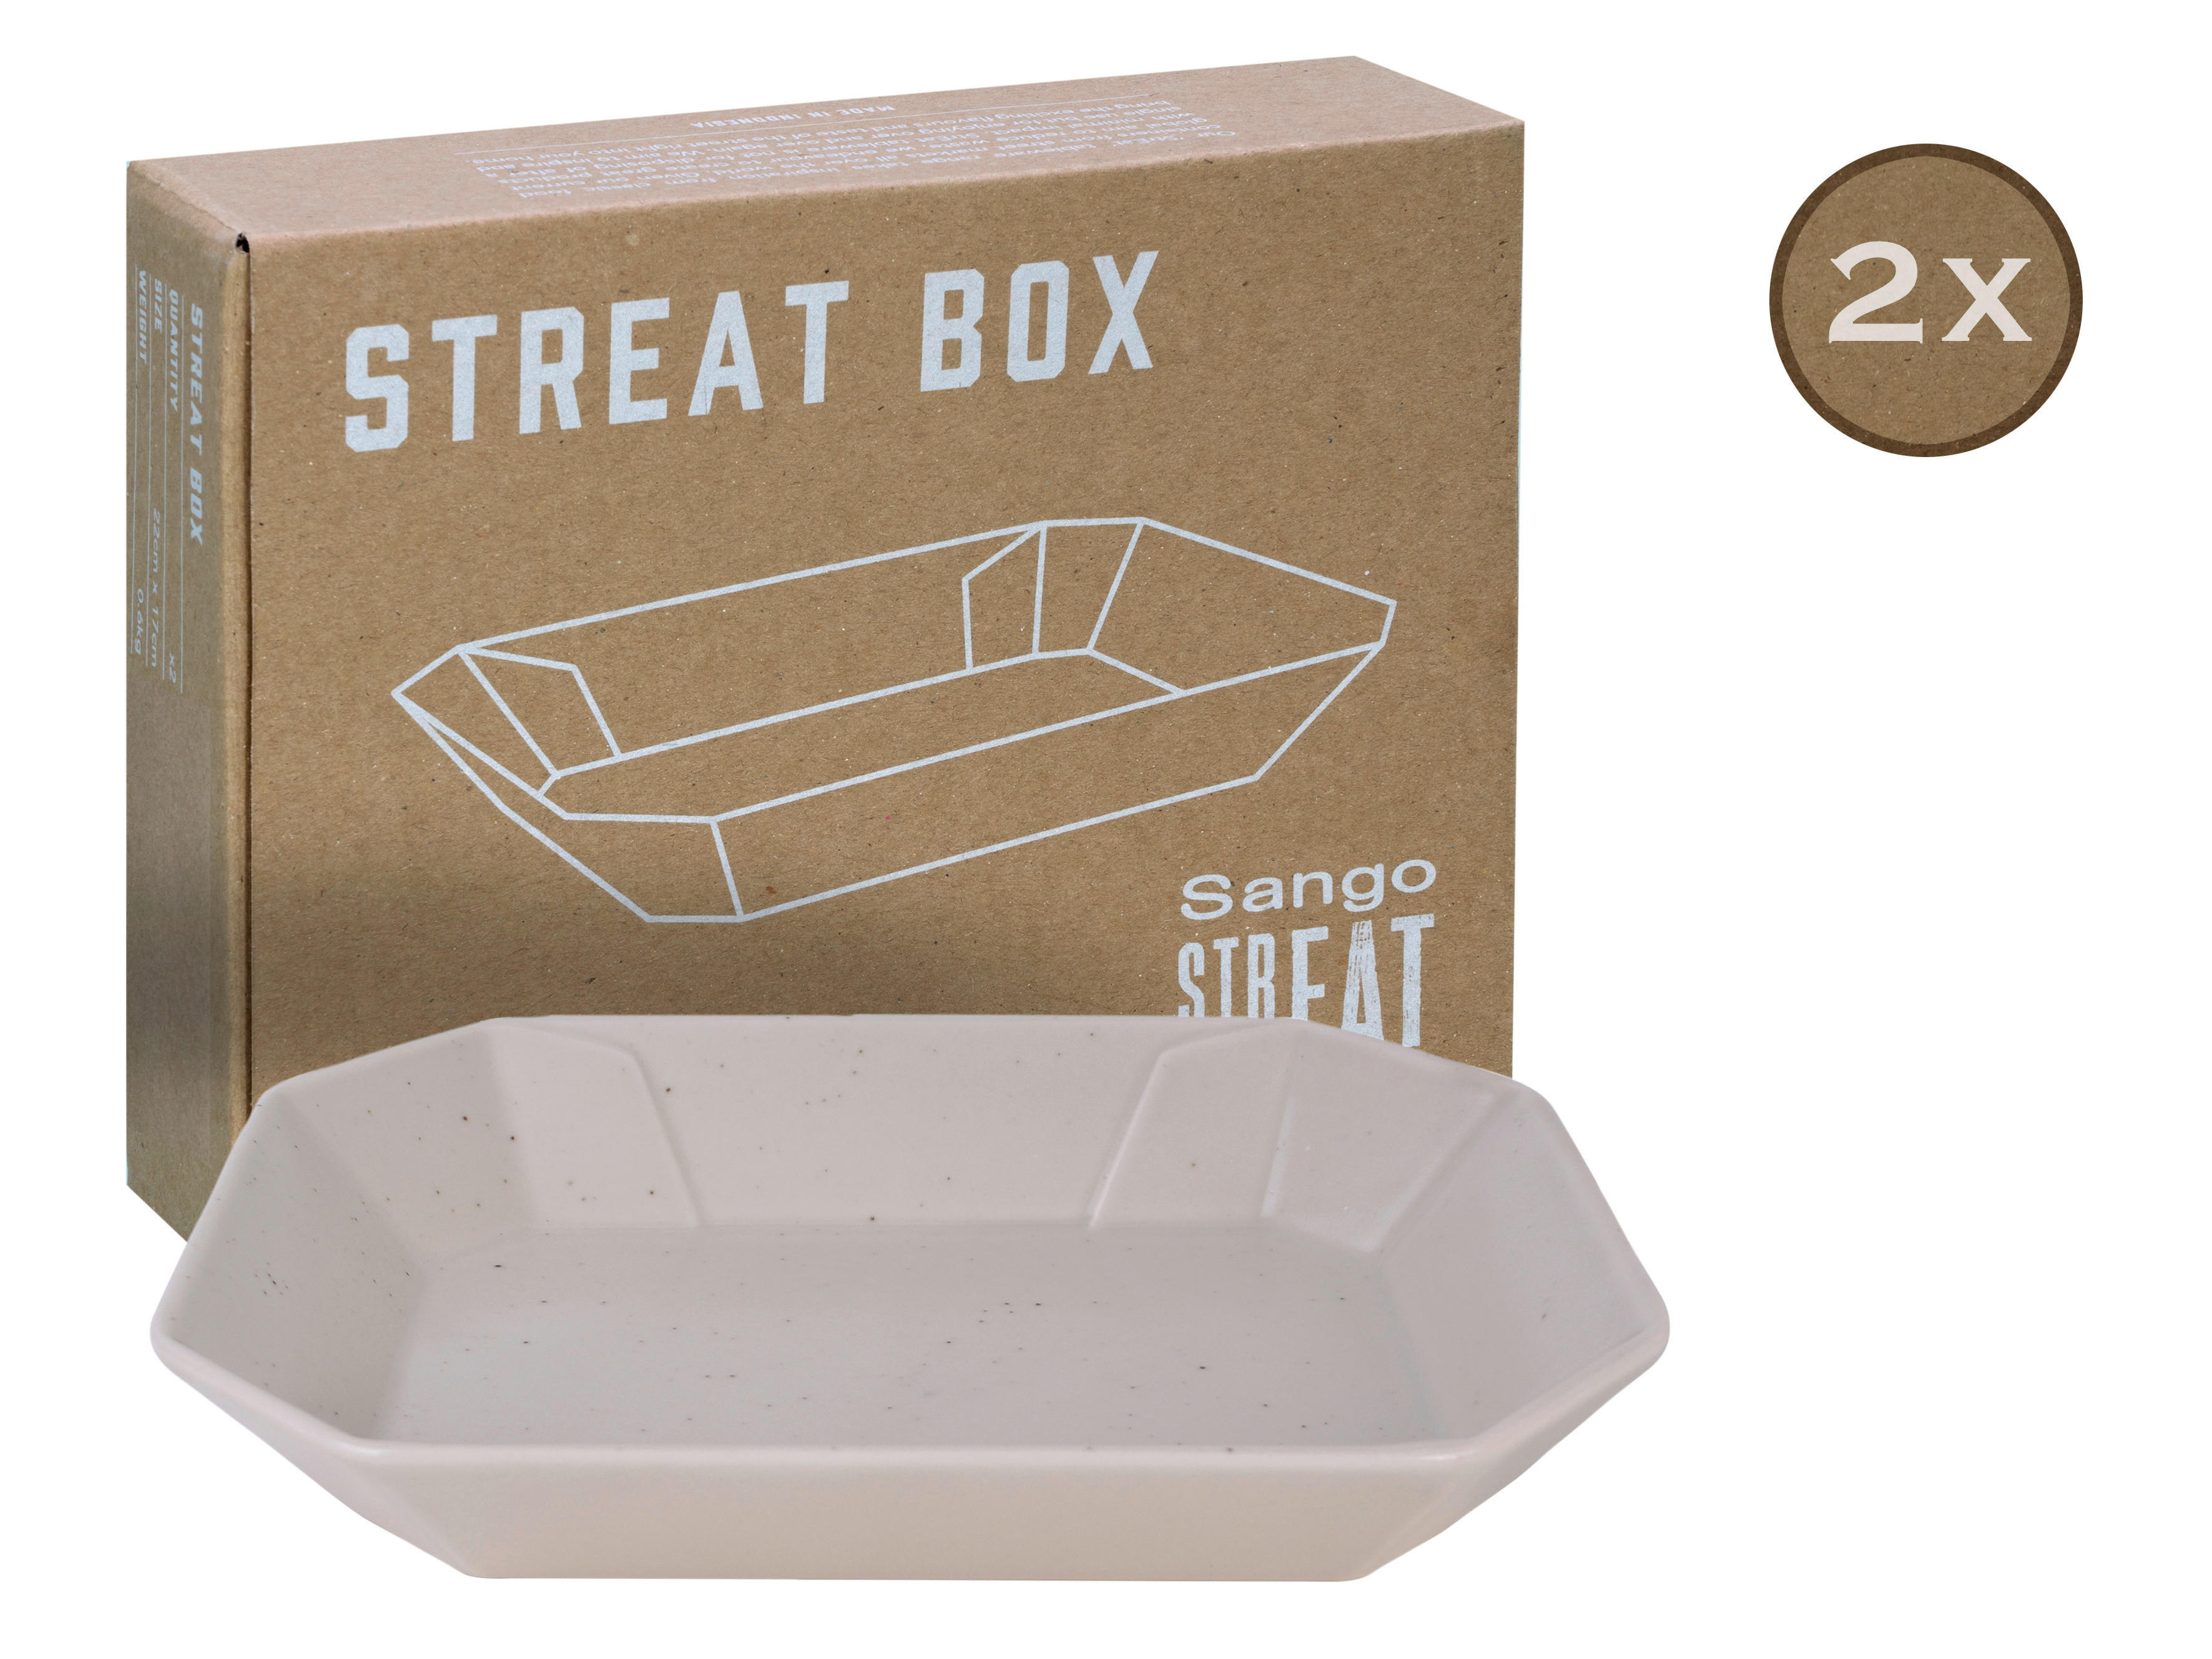 CreaTable Servierset Streat Box creme Steinzeug B/T: ca. 17x22 cm